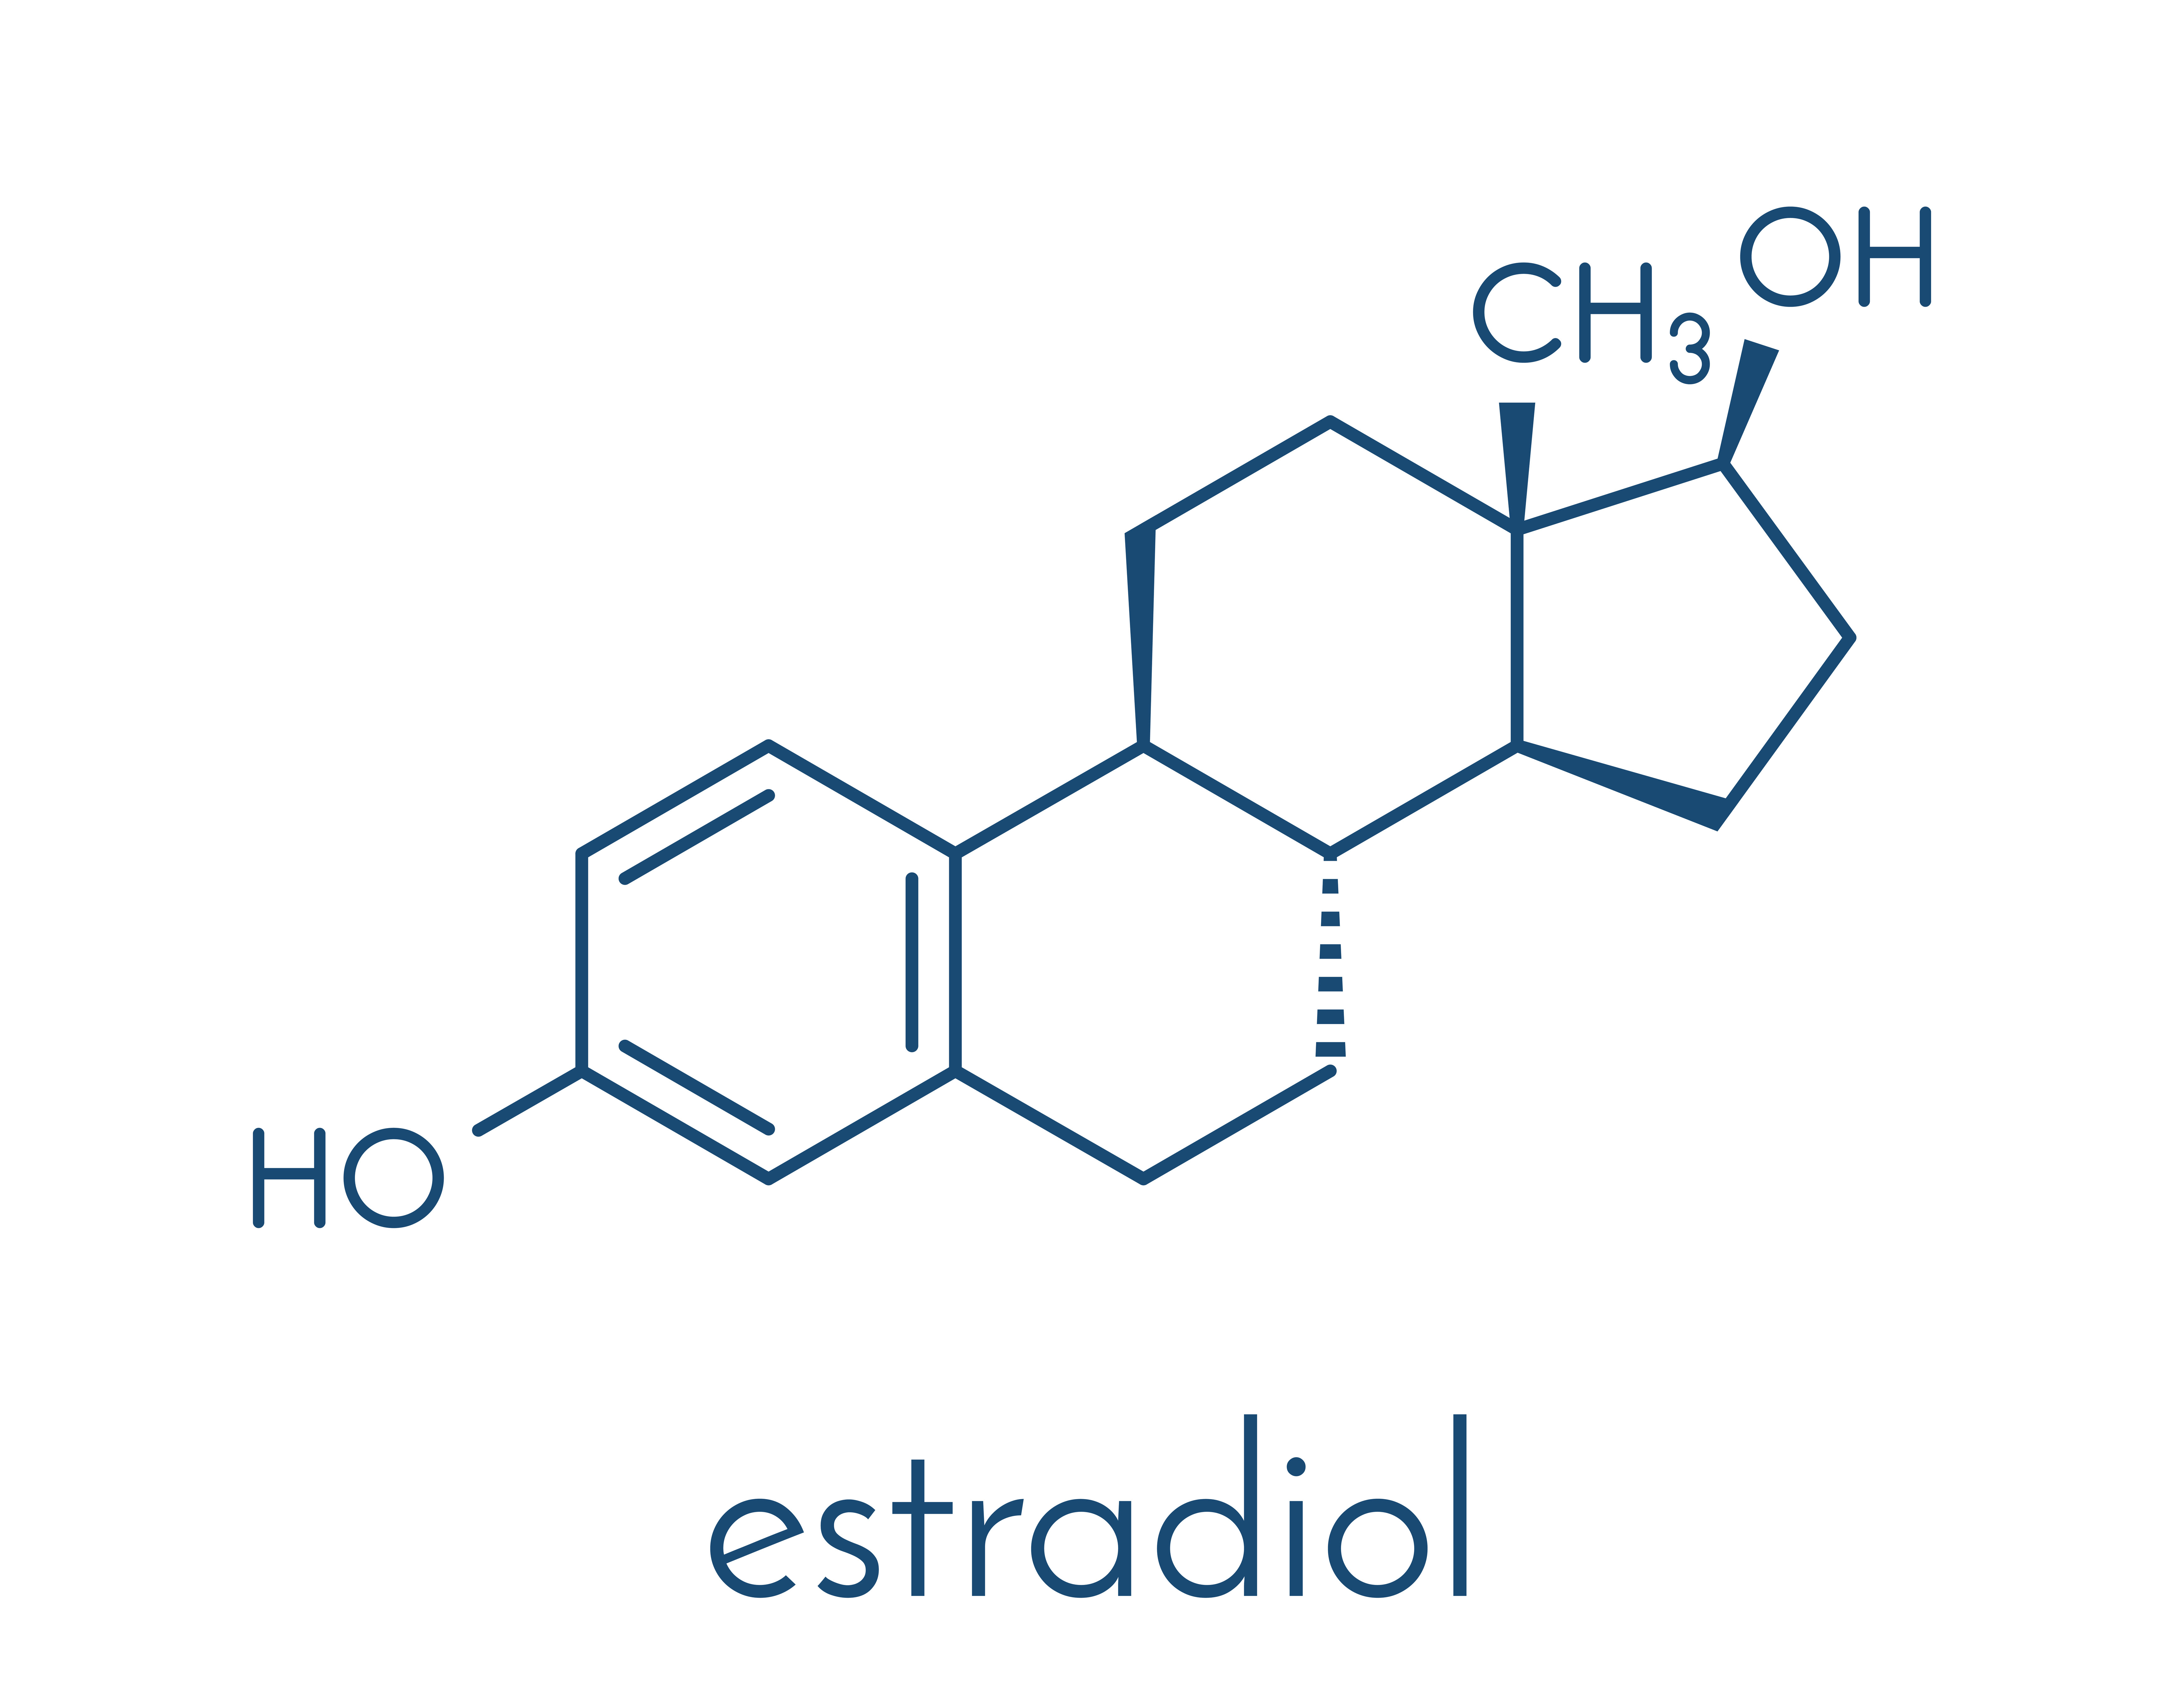 Эстрадиол это эстроген. Эстрадиол структурная формула. 17 Бета эстрадиол. Эстрадиол Скелетная формула. Эстрон и эстрадиол.